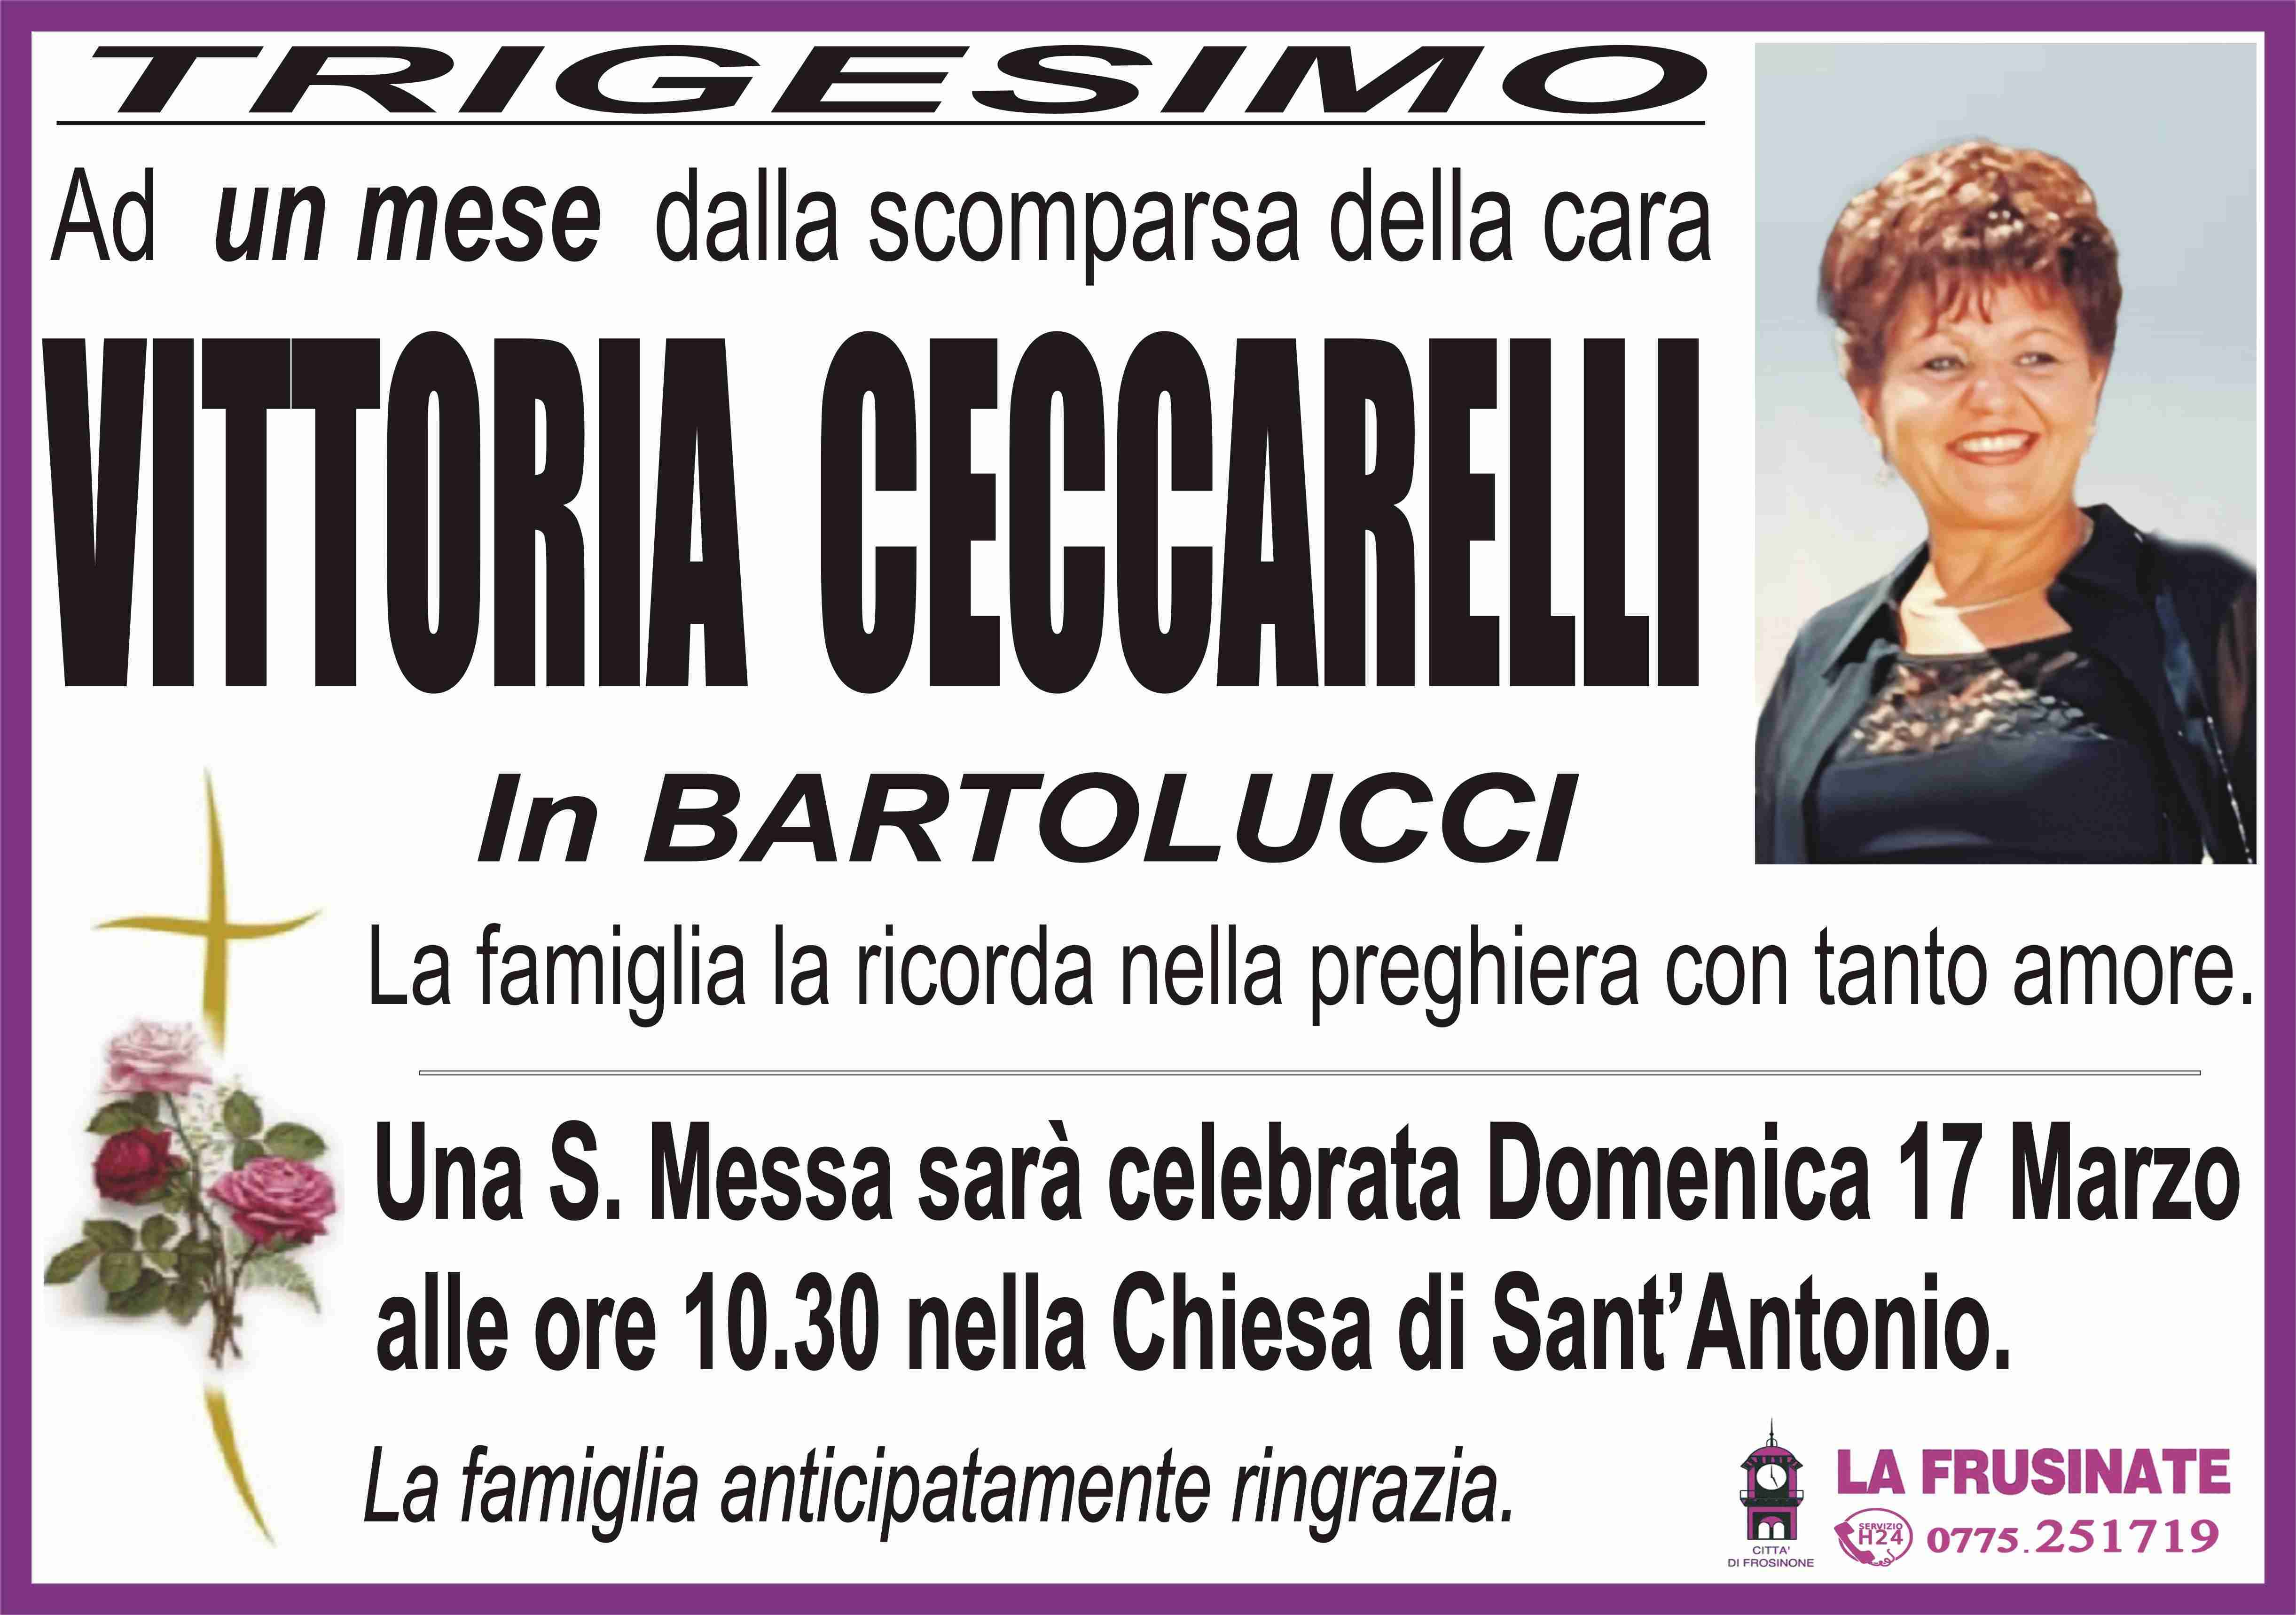 Vittoria Ceccarelli